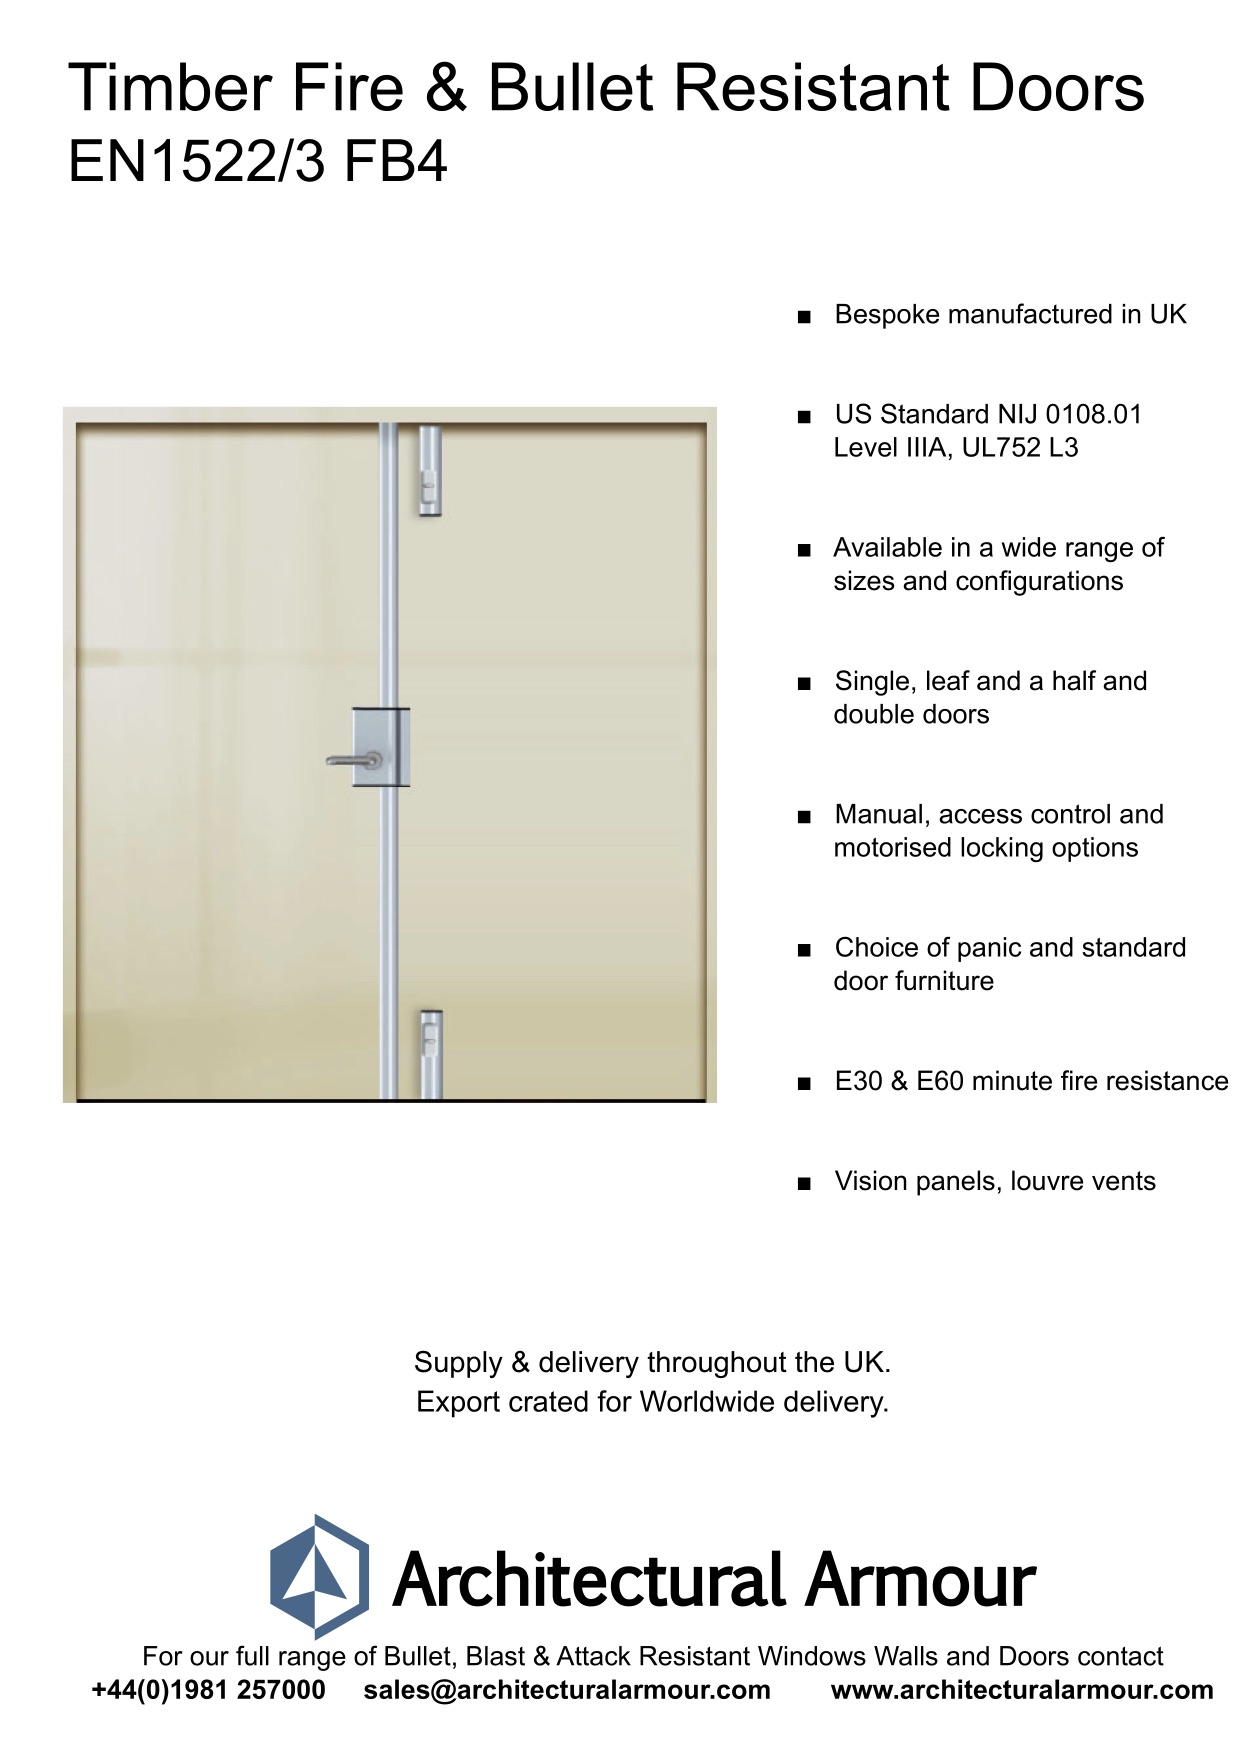 Fire-resistant-and-Bulletproof-Timber-Double-Doors-UK-EN1522-3-FB4